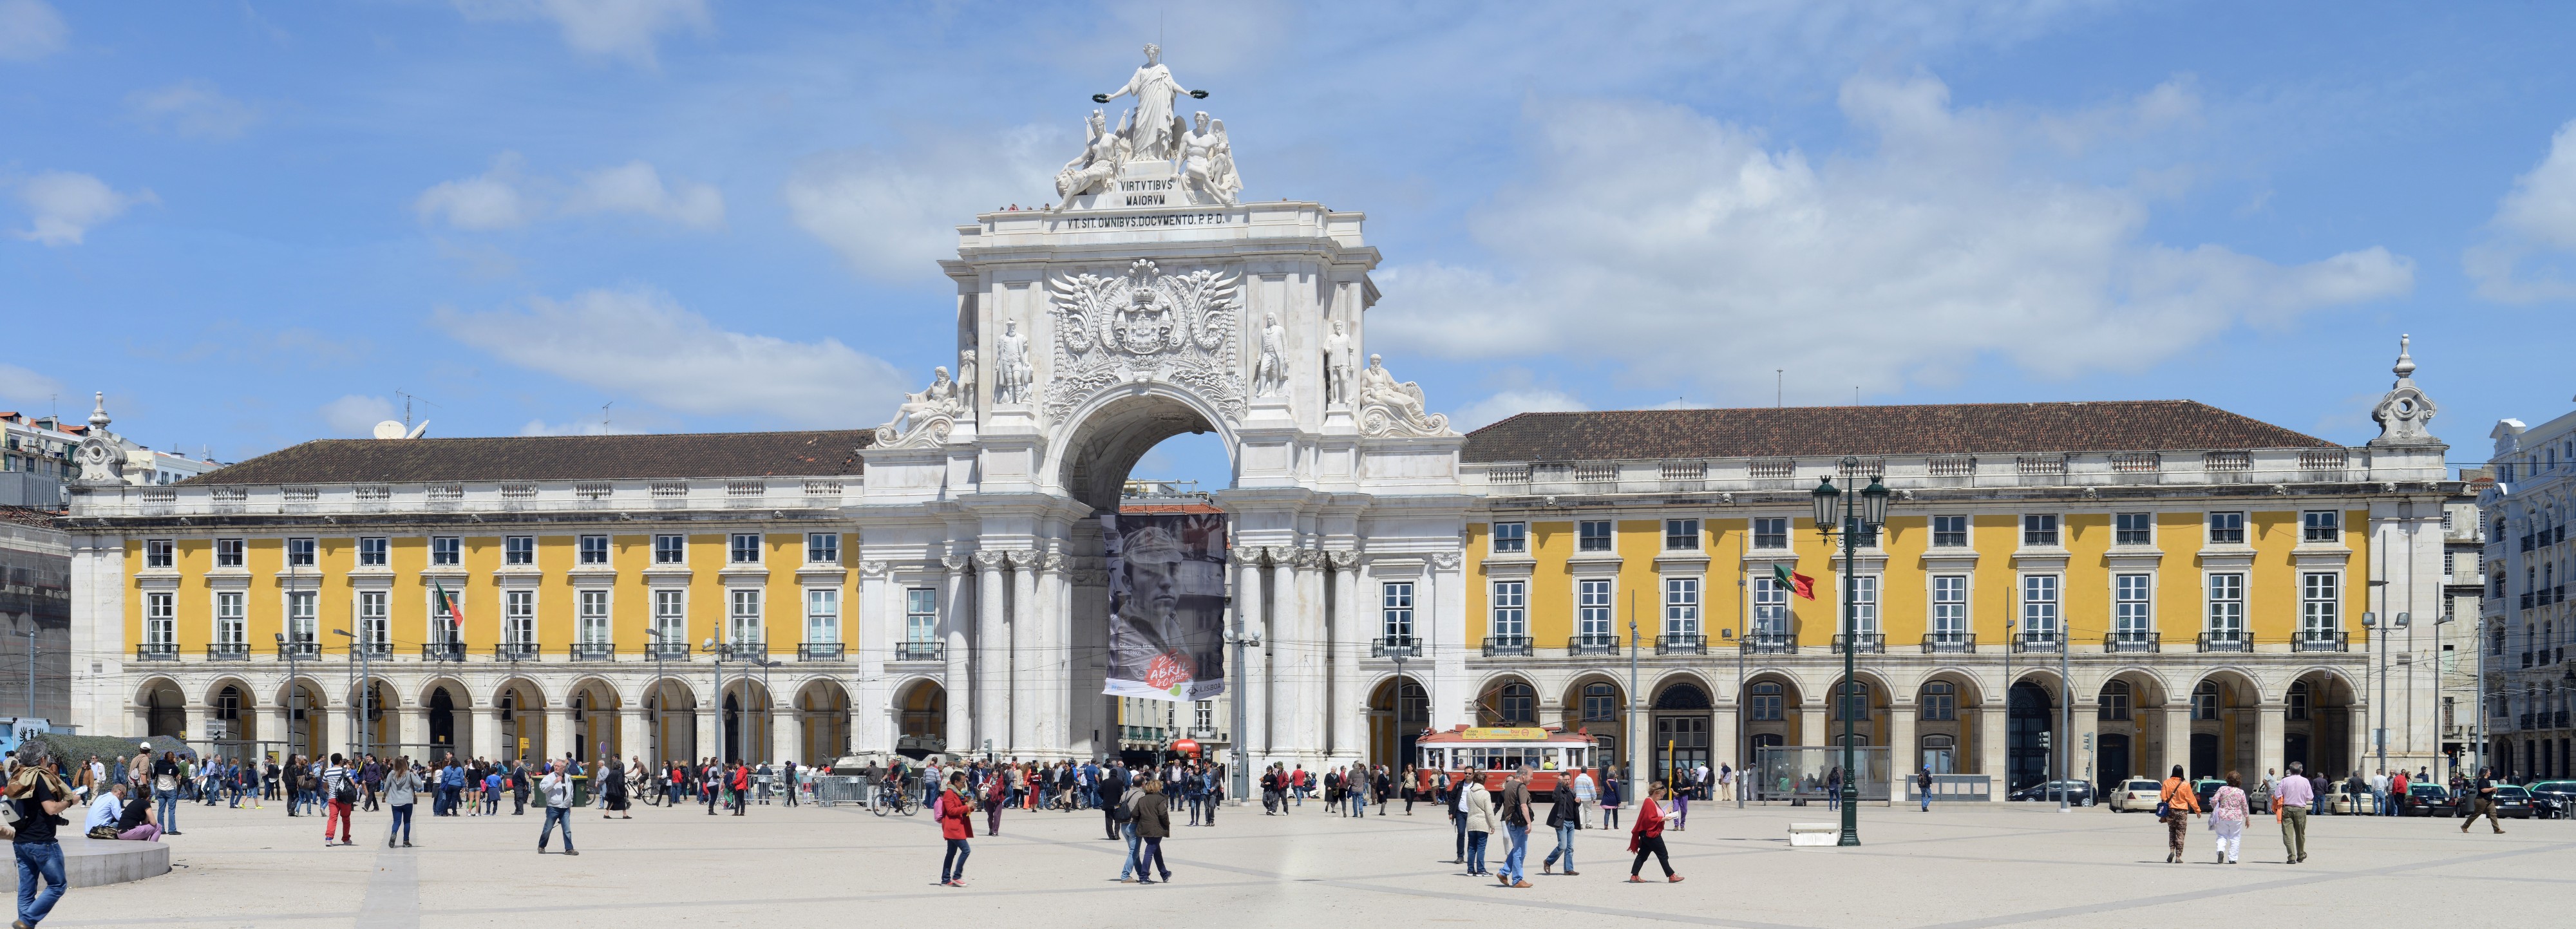 Lisboa April 2014-15a